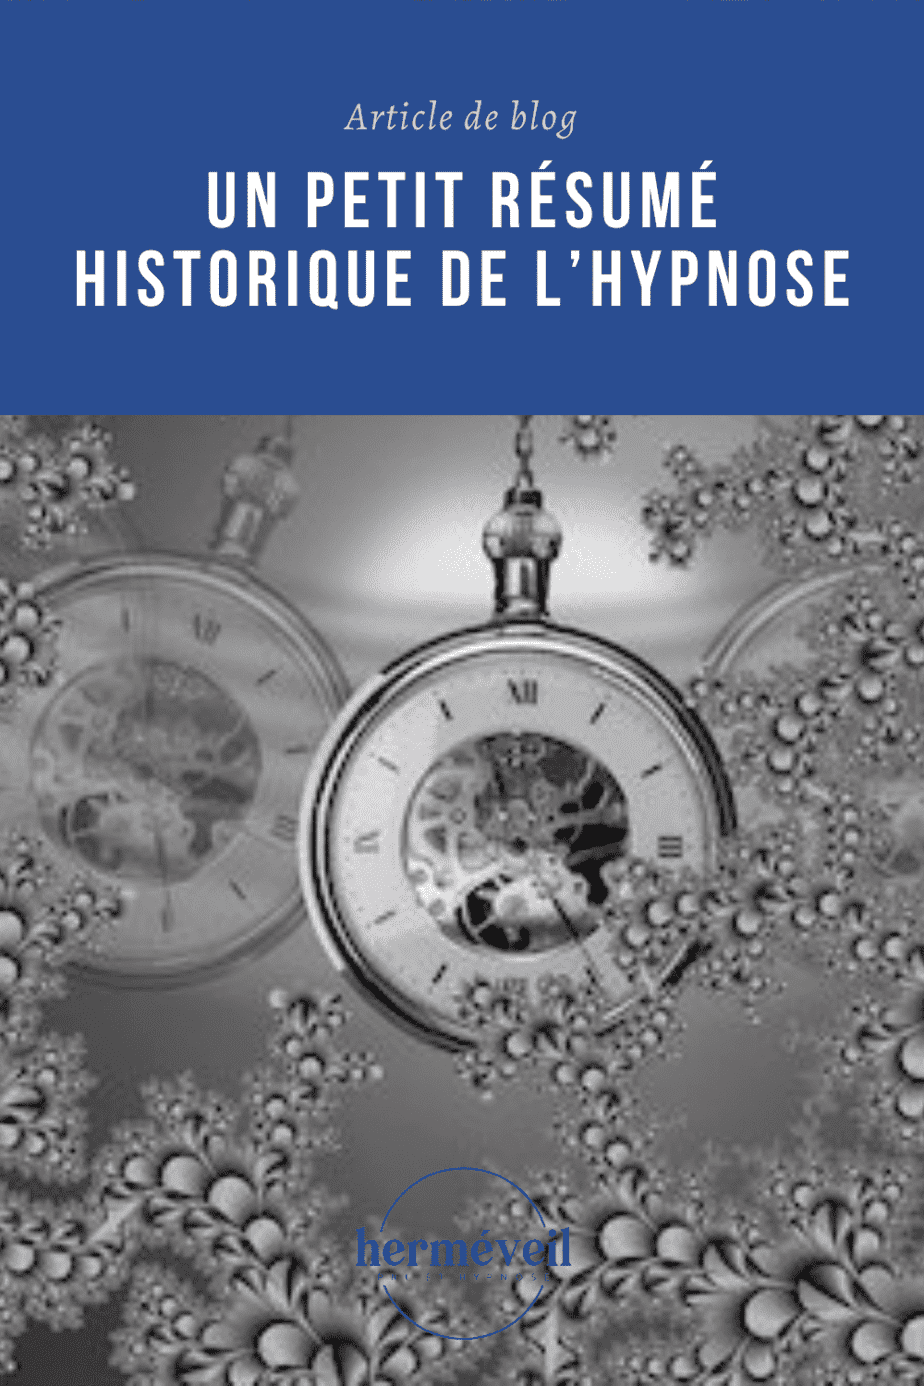 Présentation pour Pinterest de l'histoire de l'hypnose.